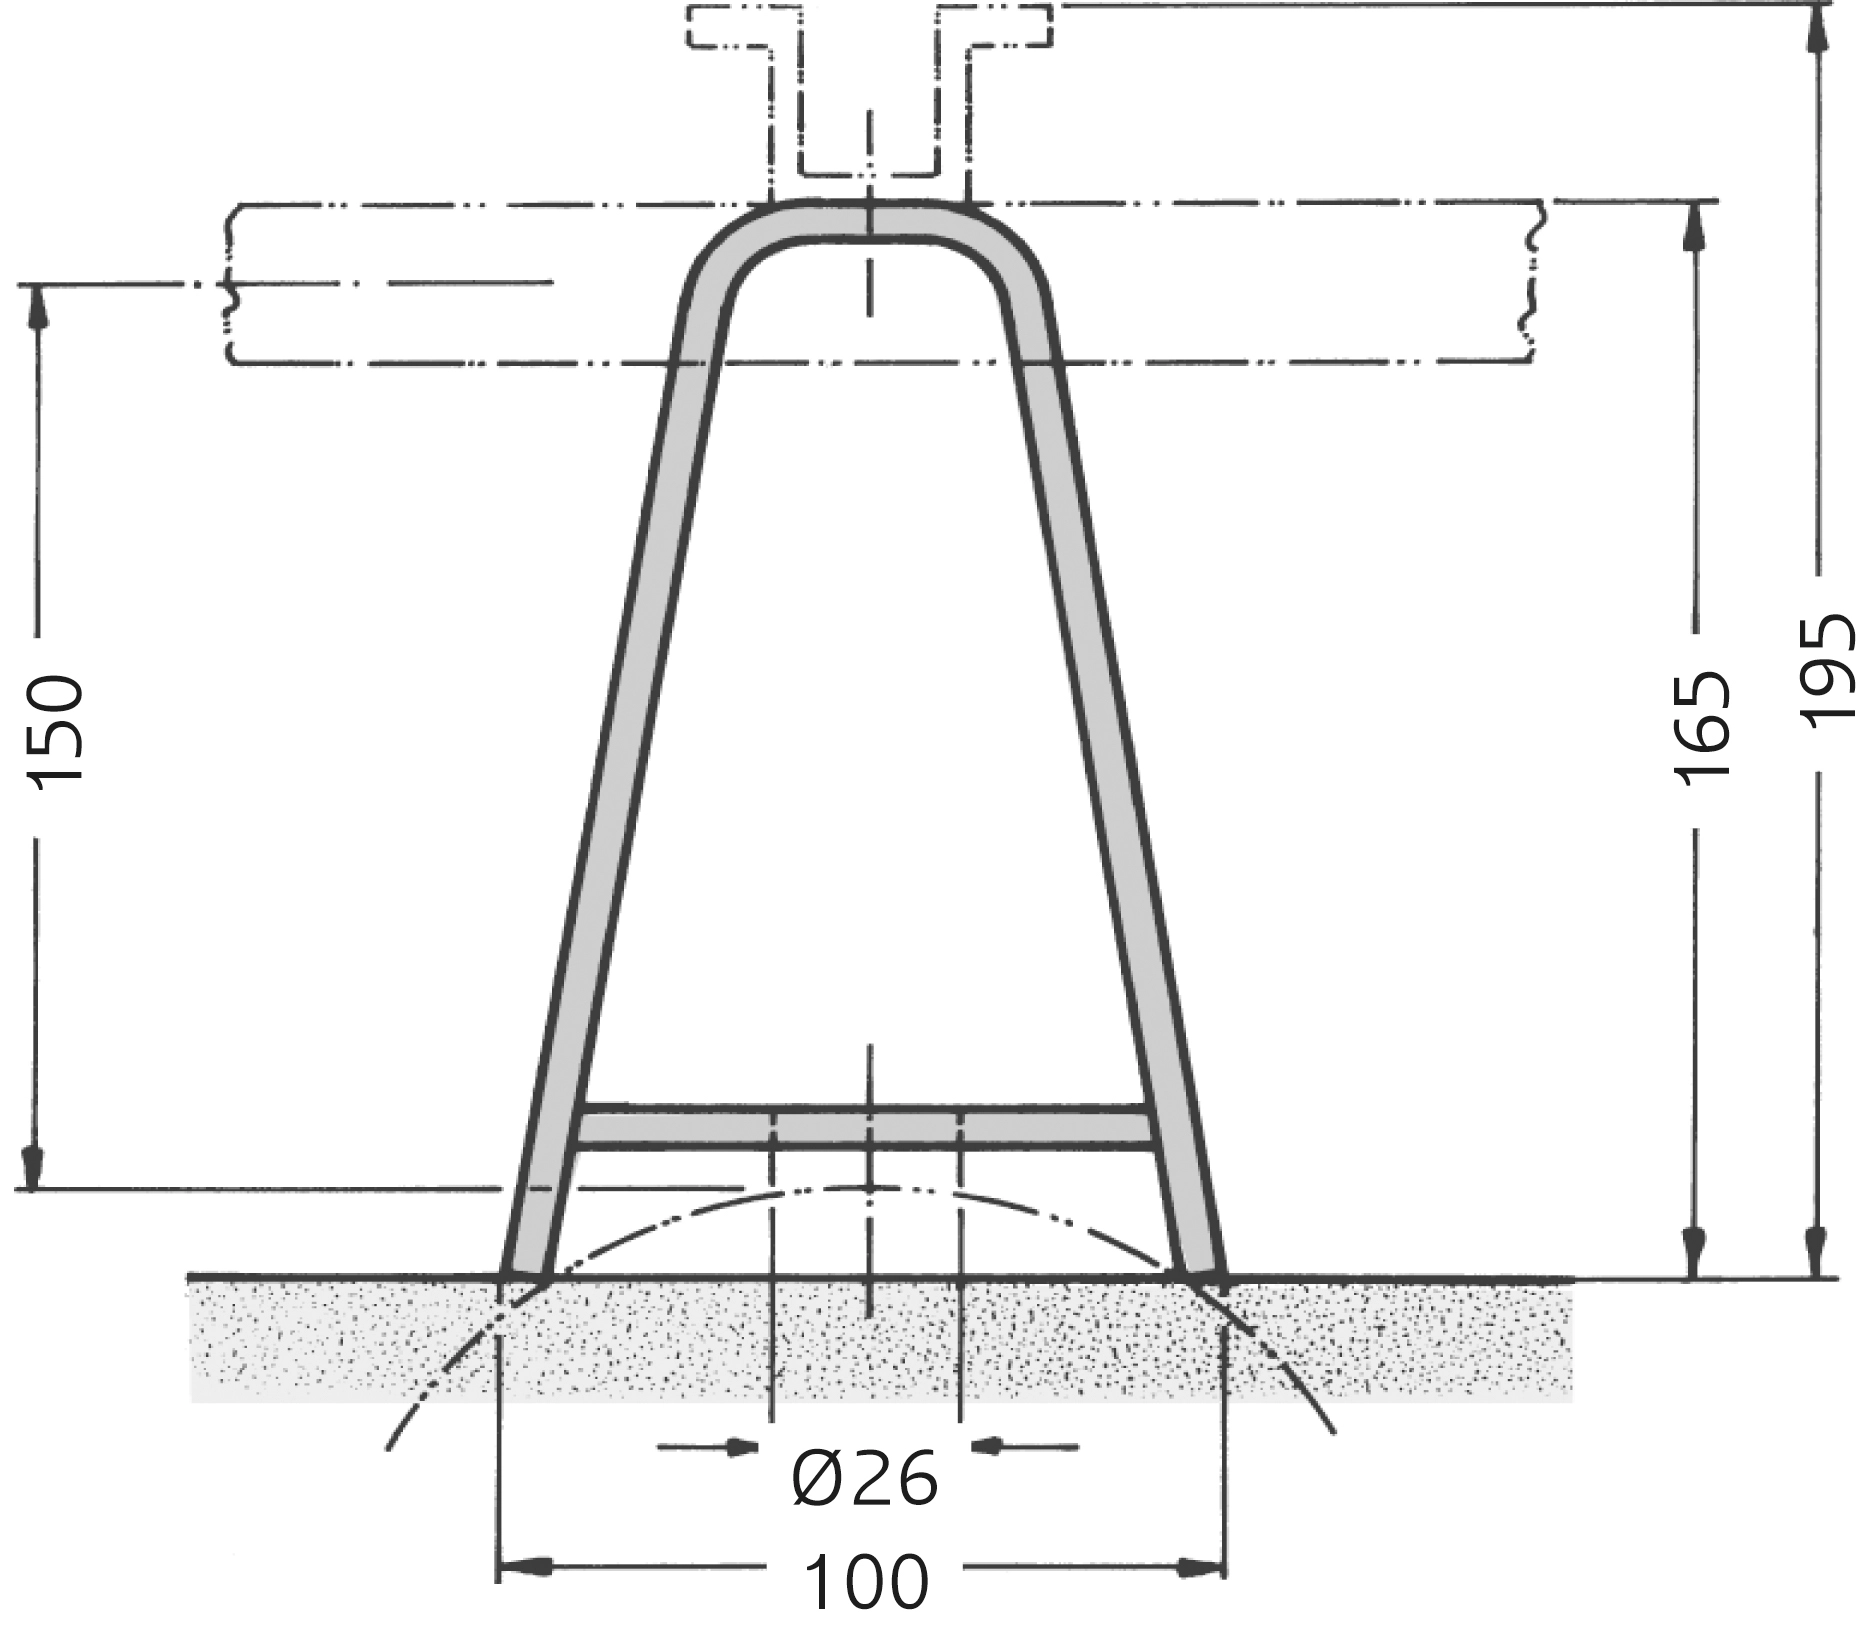 Wandbefestigungsbügel für ebene und runde Bauwerke, Ø ≥ 200 mm.